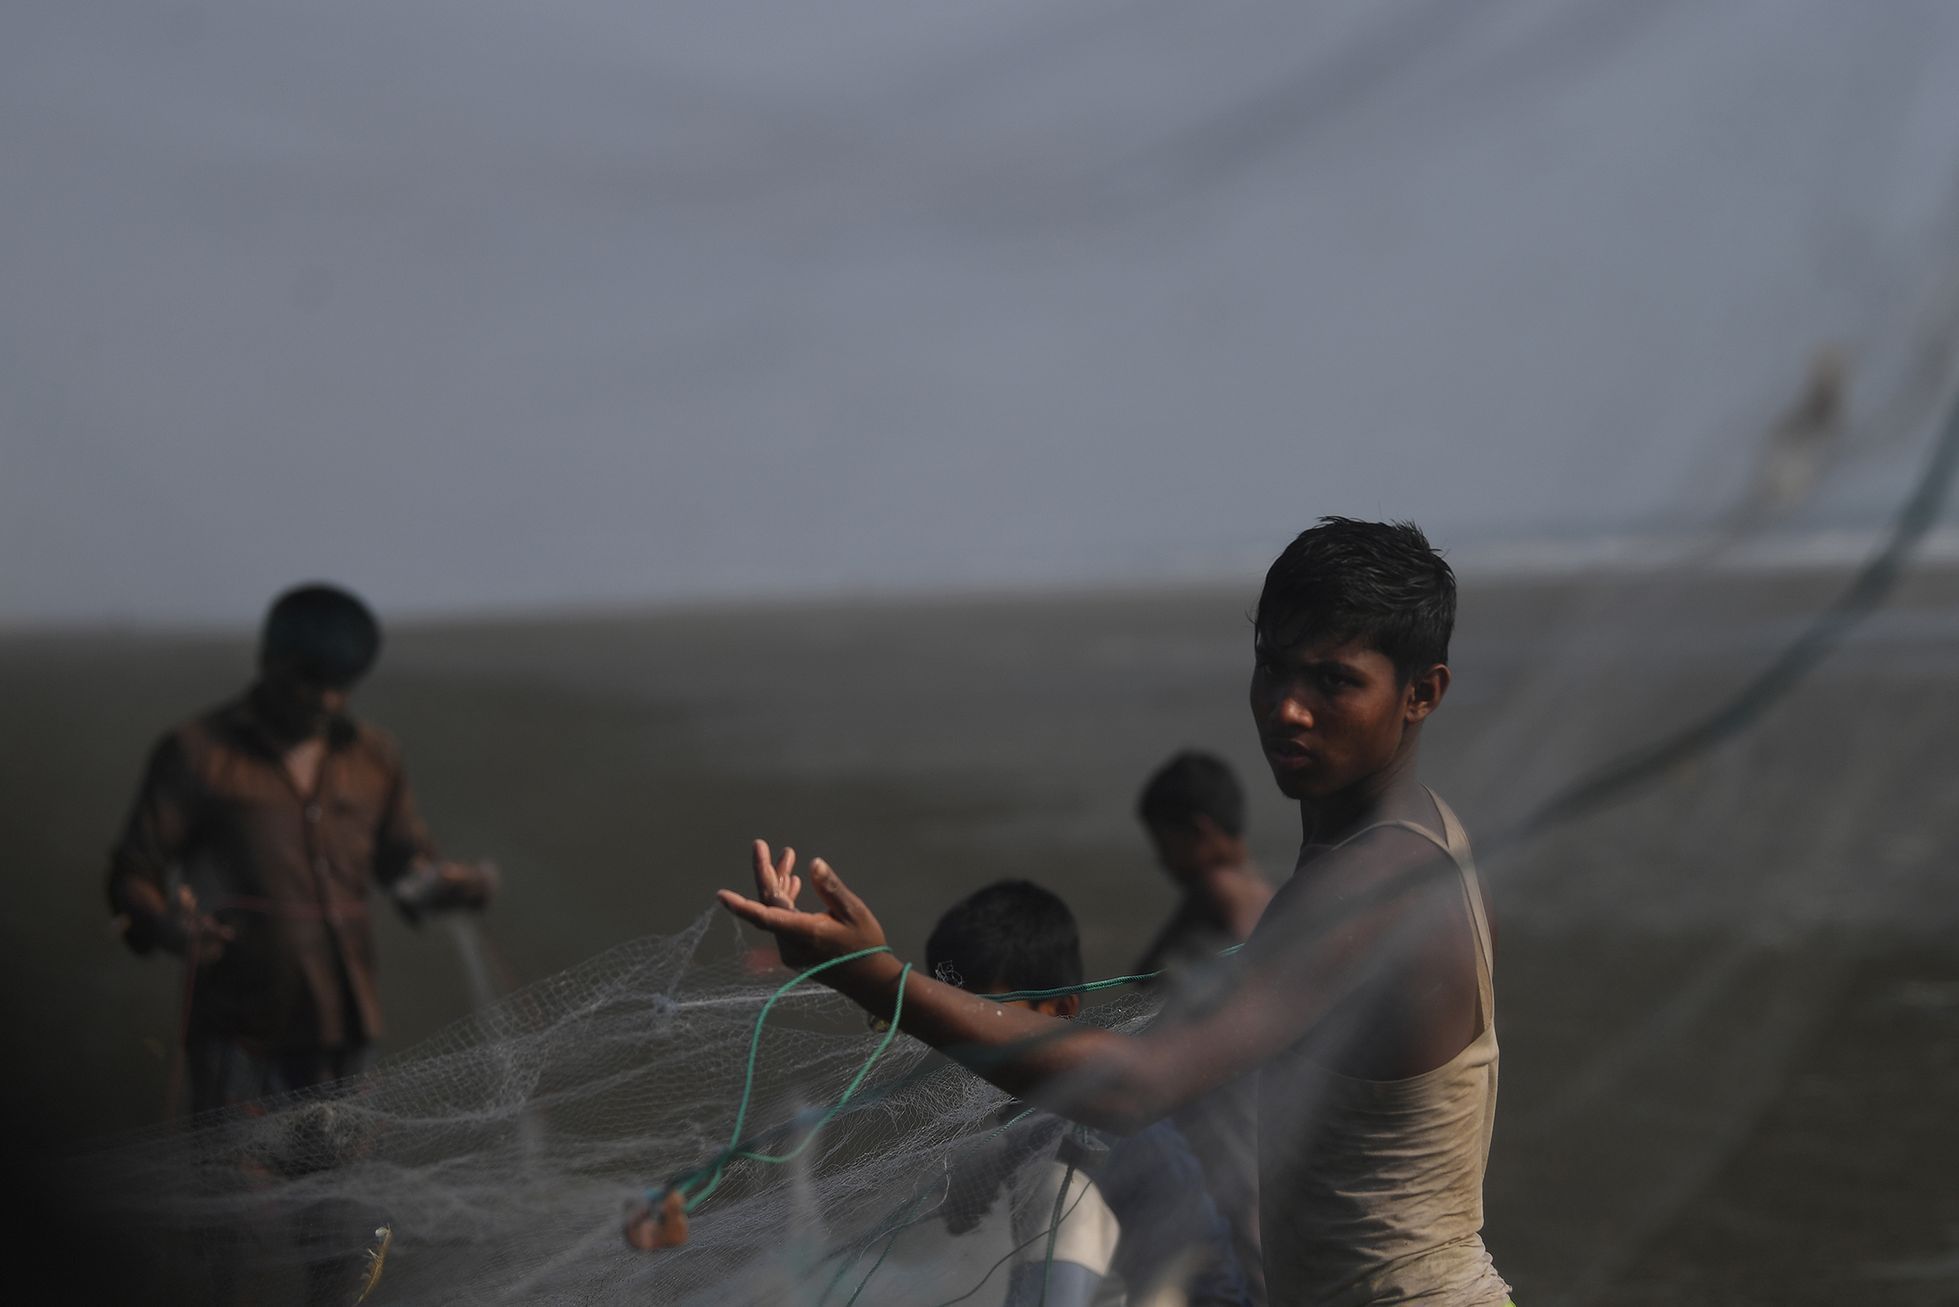 Fotogalerie / Rohingové v Bangladéši / Reuters / 5